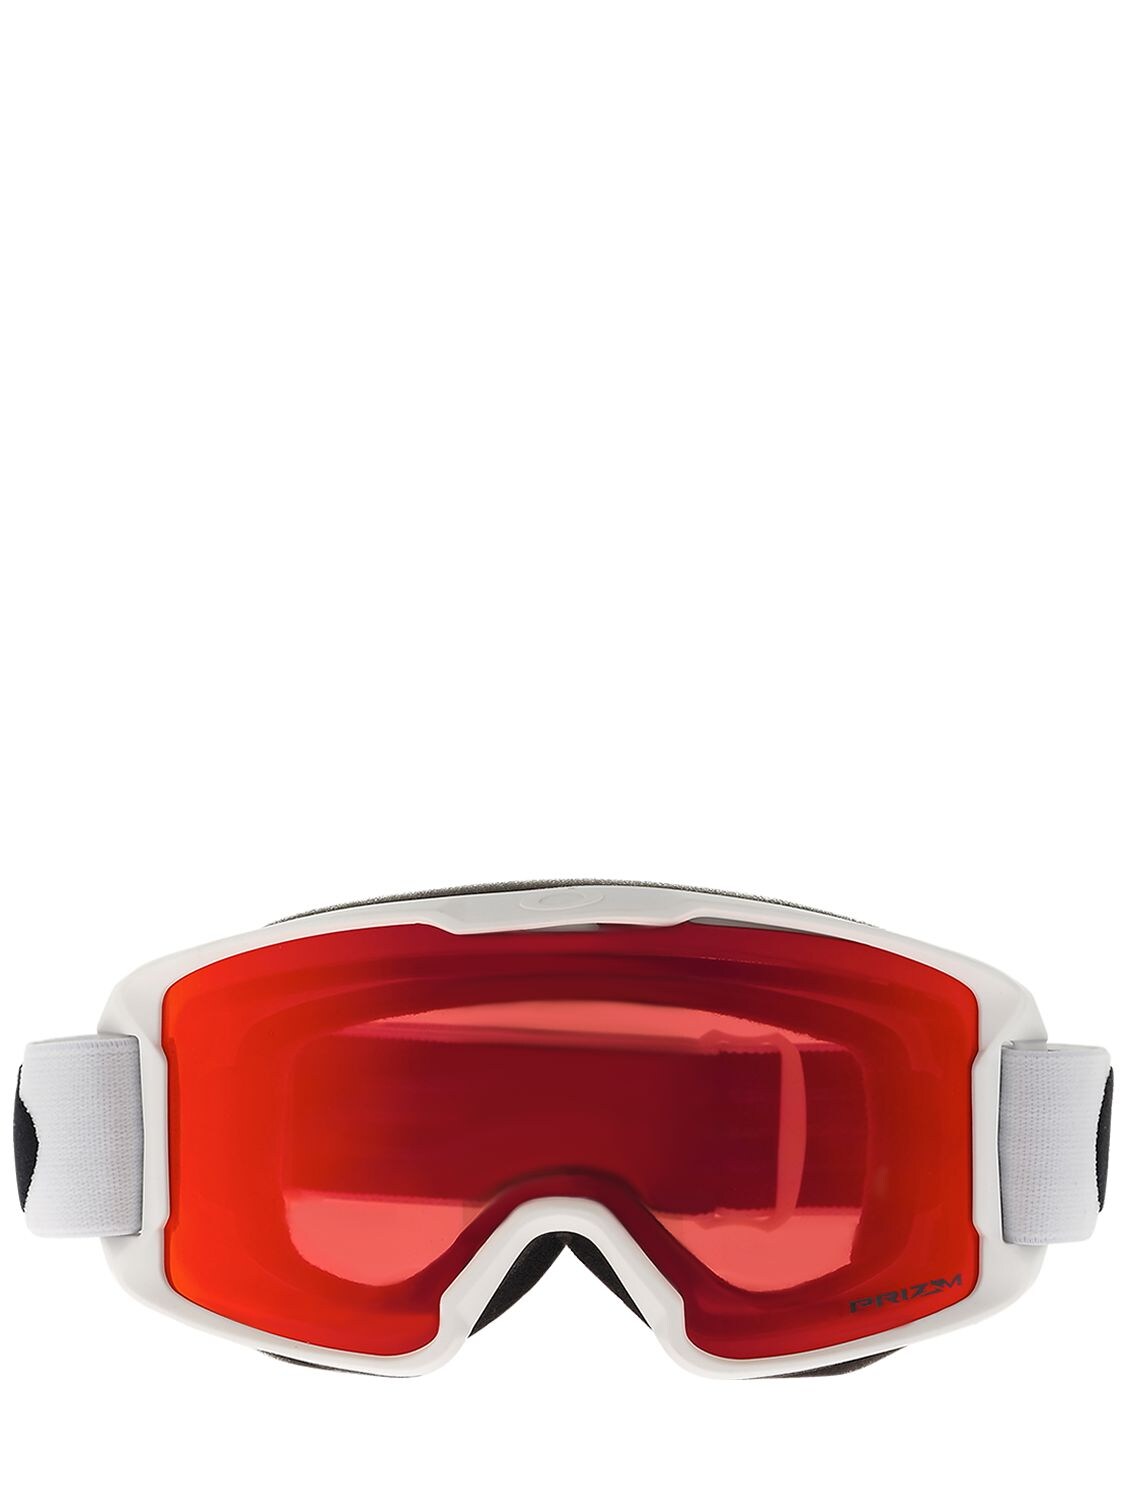 Oakley Line Miner Snow Goggles In Matte White